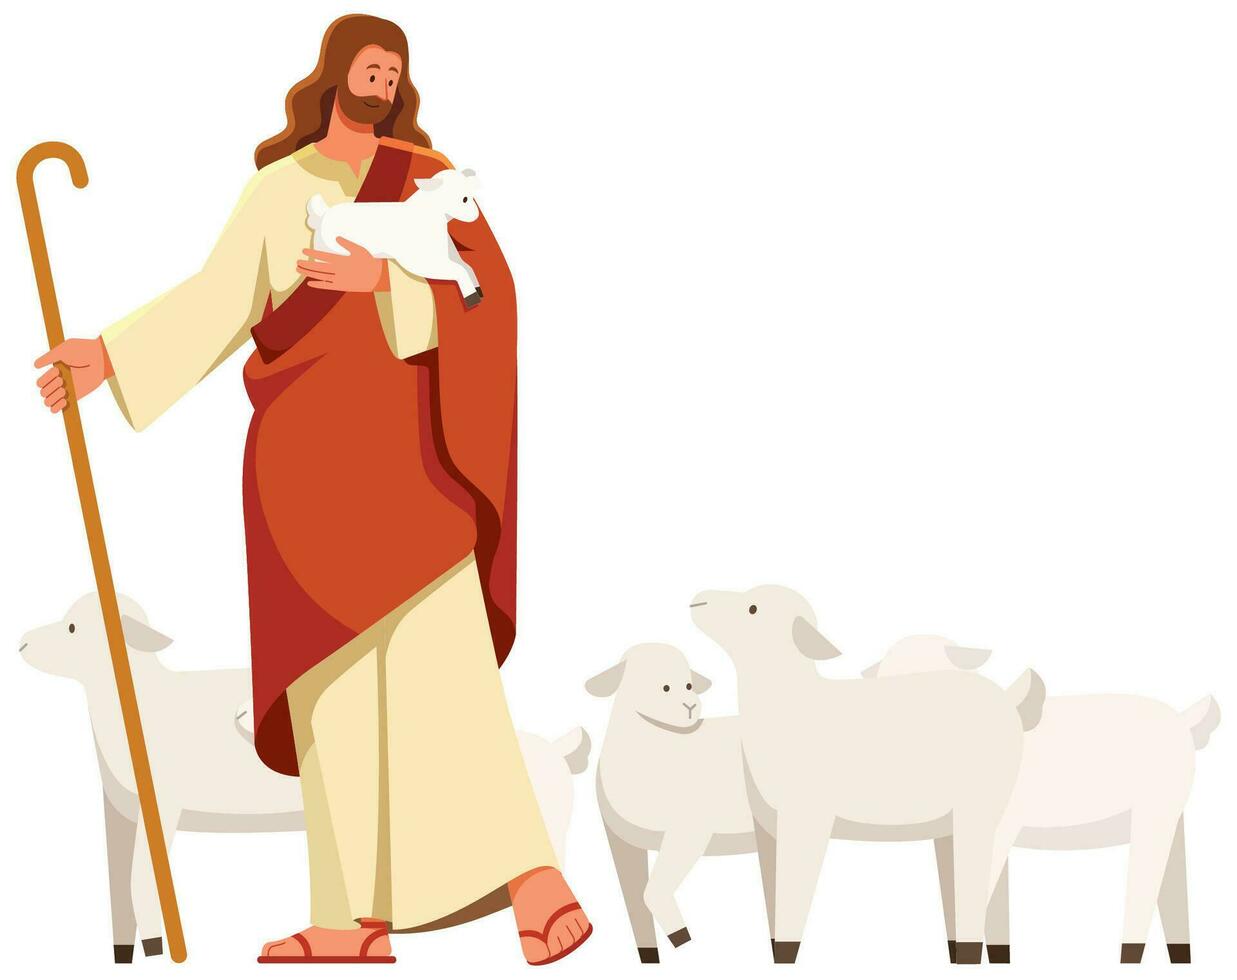 Jesus the Good Shepherd on White 24794172 Vector Art at Vecteezy